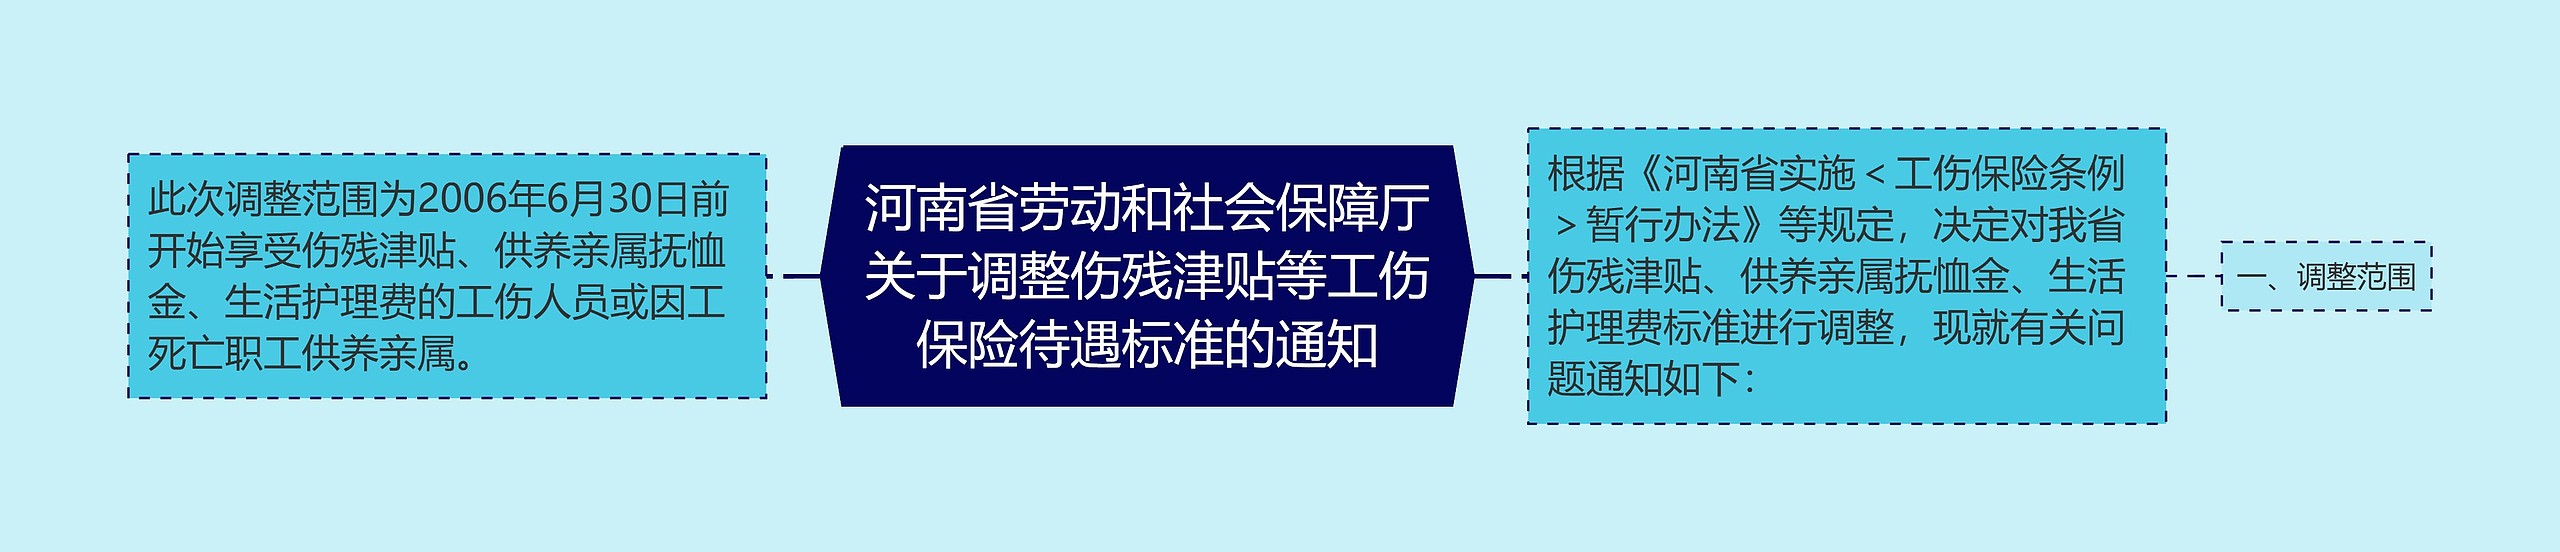 河南省劳动和社会保障厅关于调整伤残津贴等工伤保险待遇标准的通知